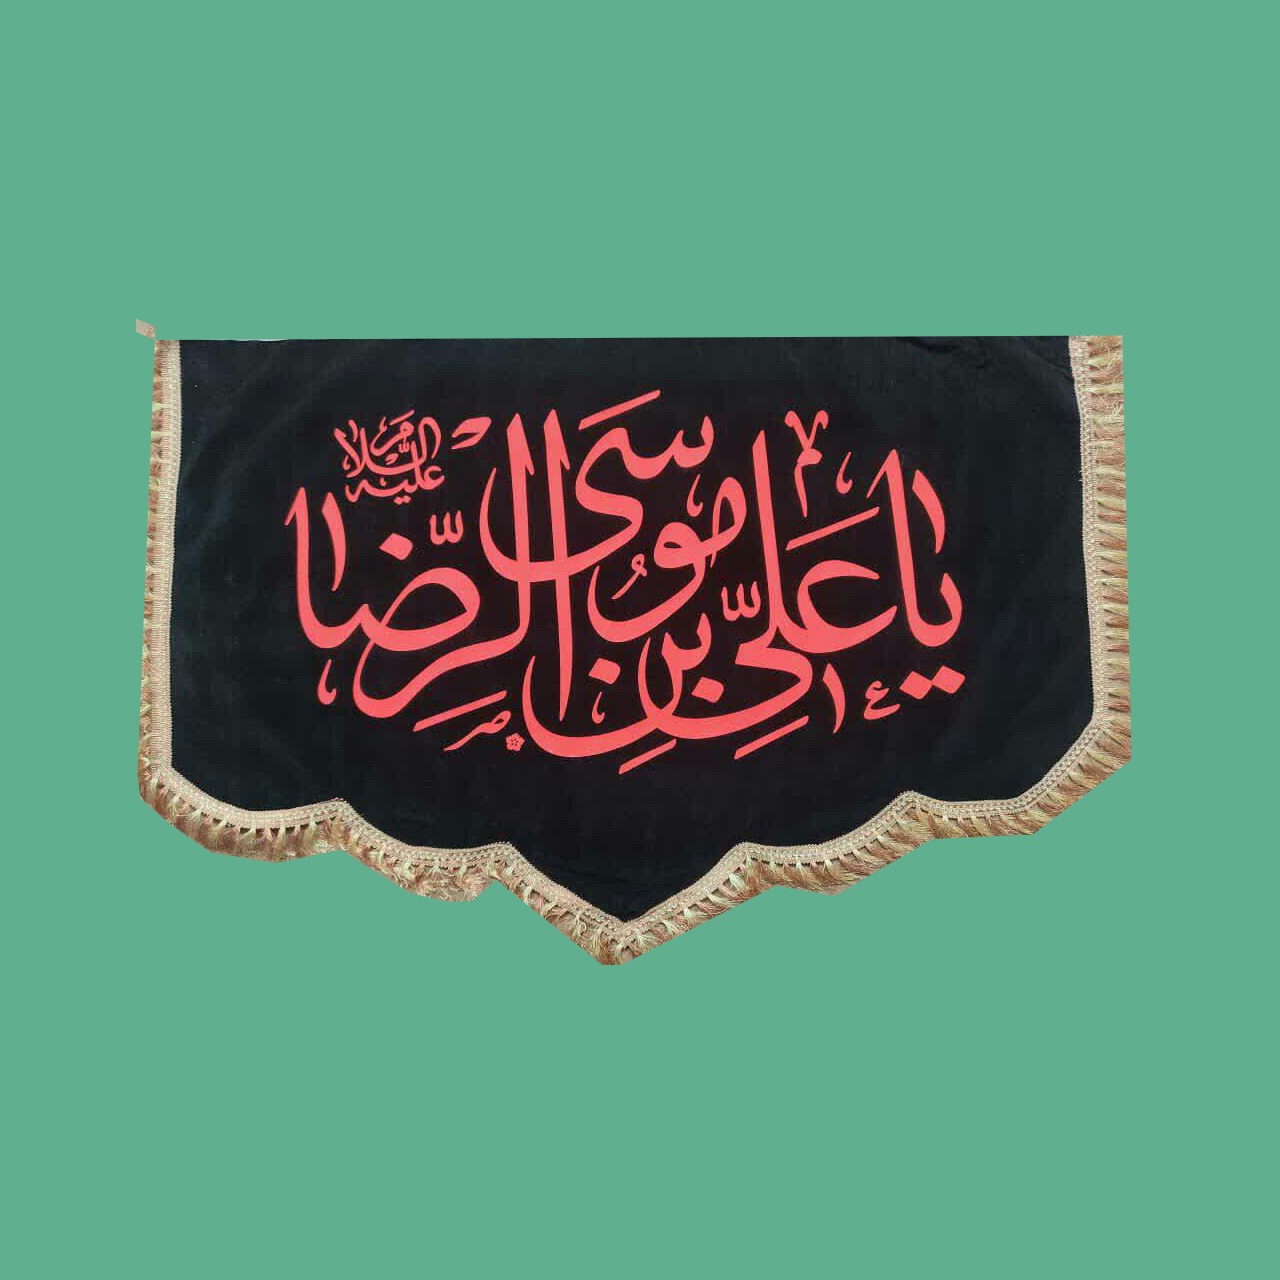 پرچم مخمل پشت منبری ویژه شهادت امام رضا علیه السلام